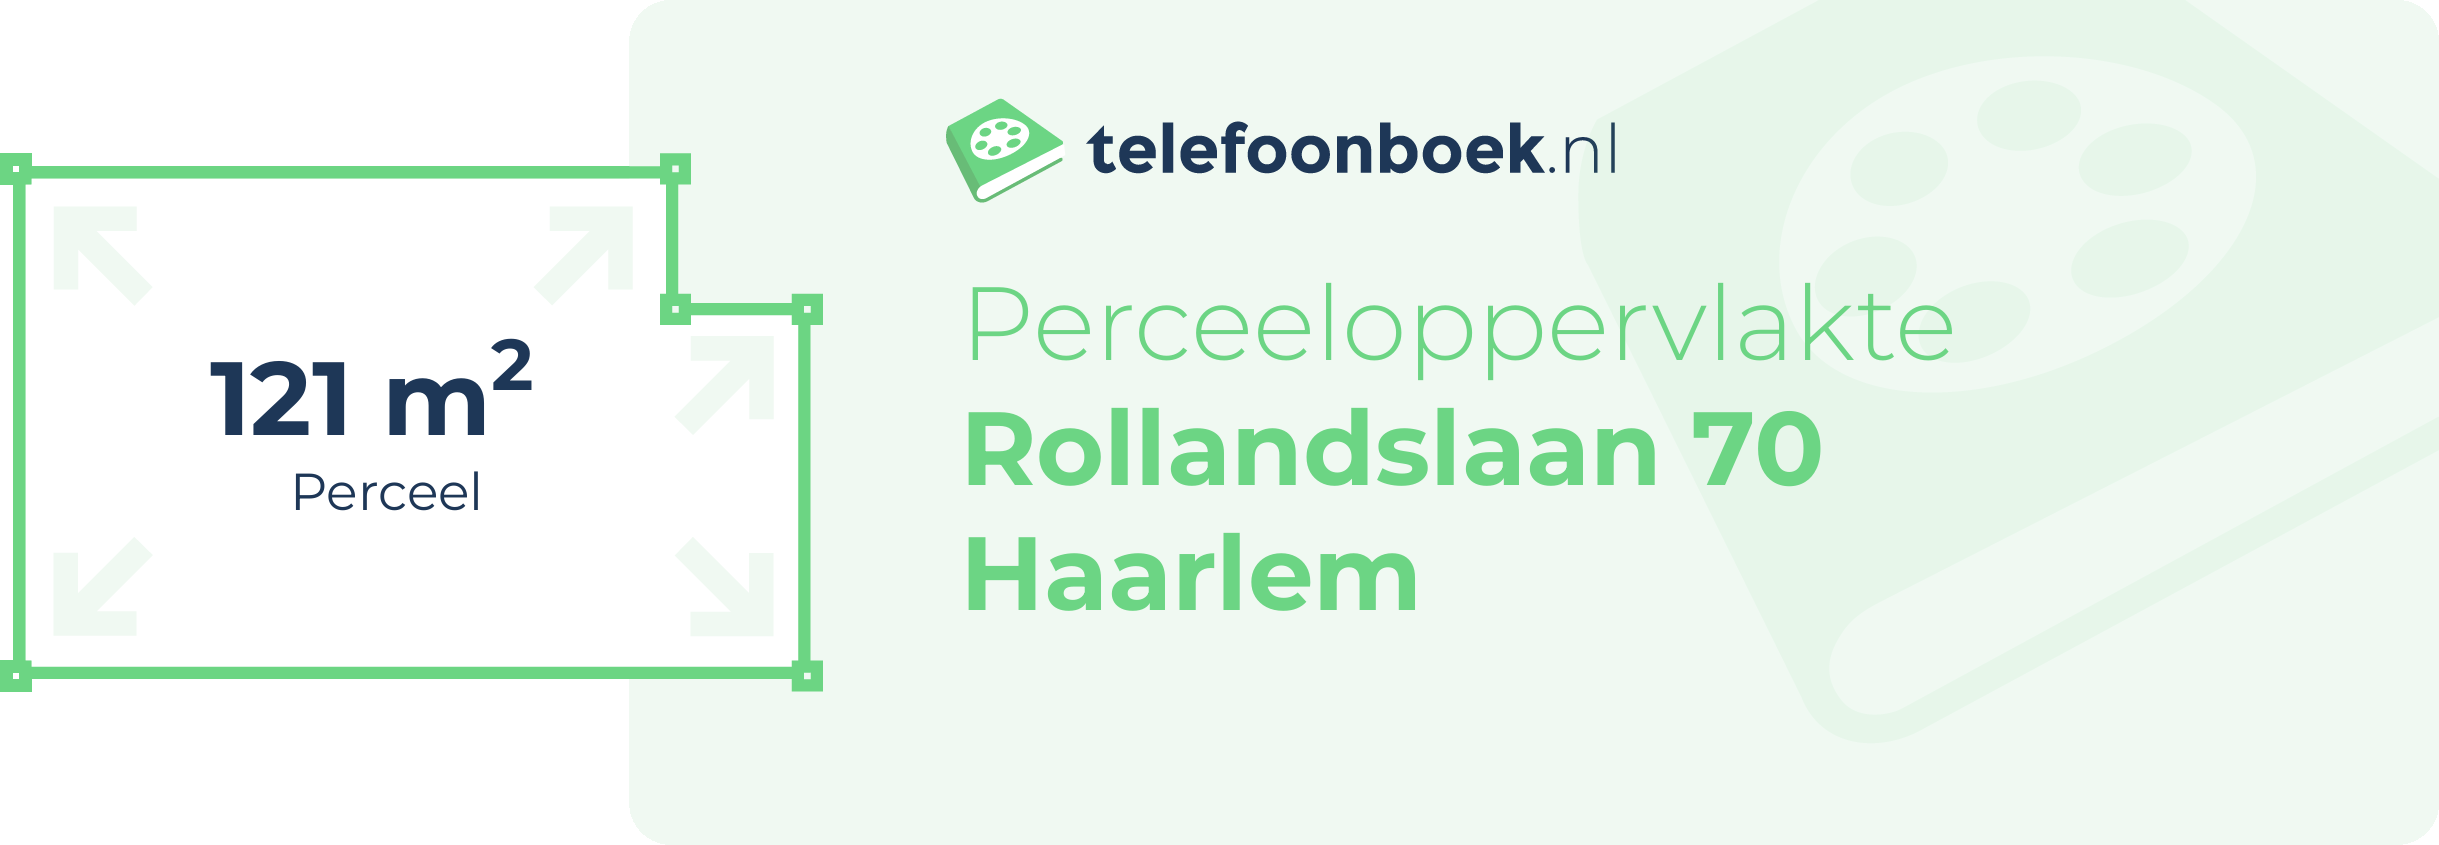 Perceeloppervlakte Rollandslaan 70 Haarlem